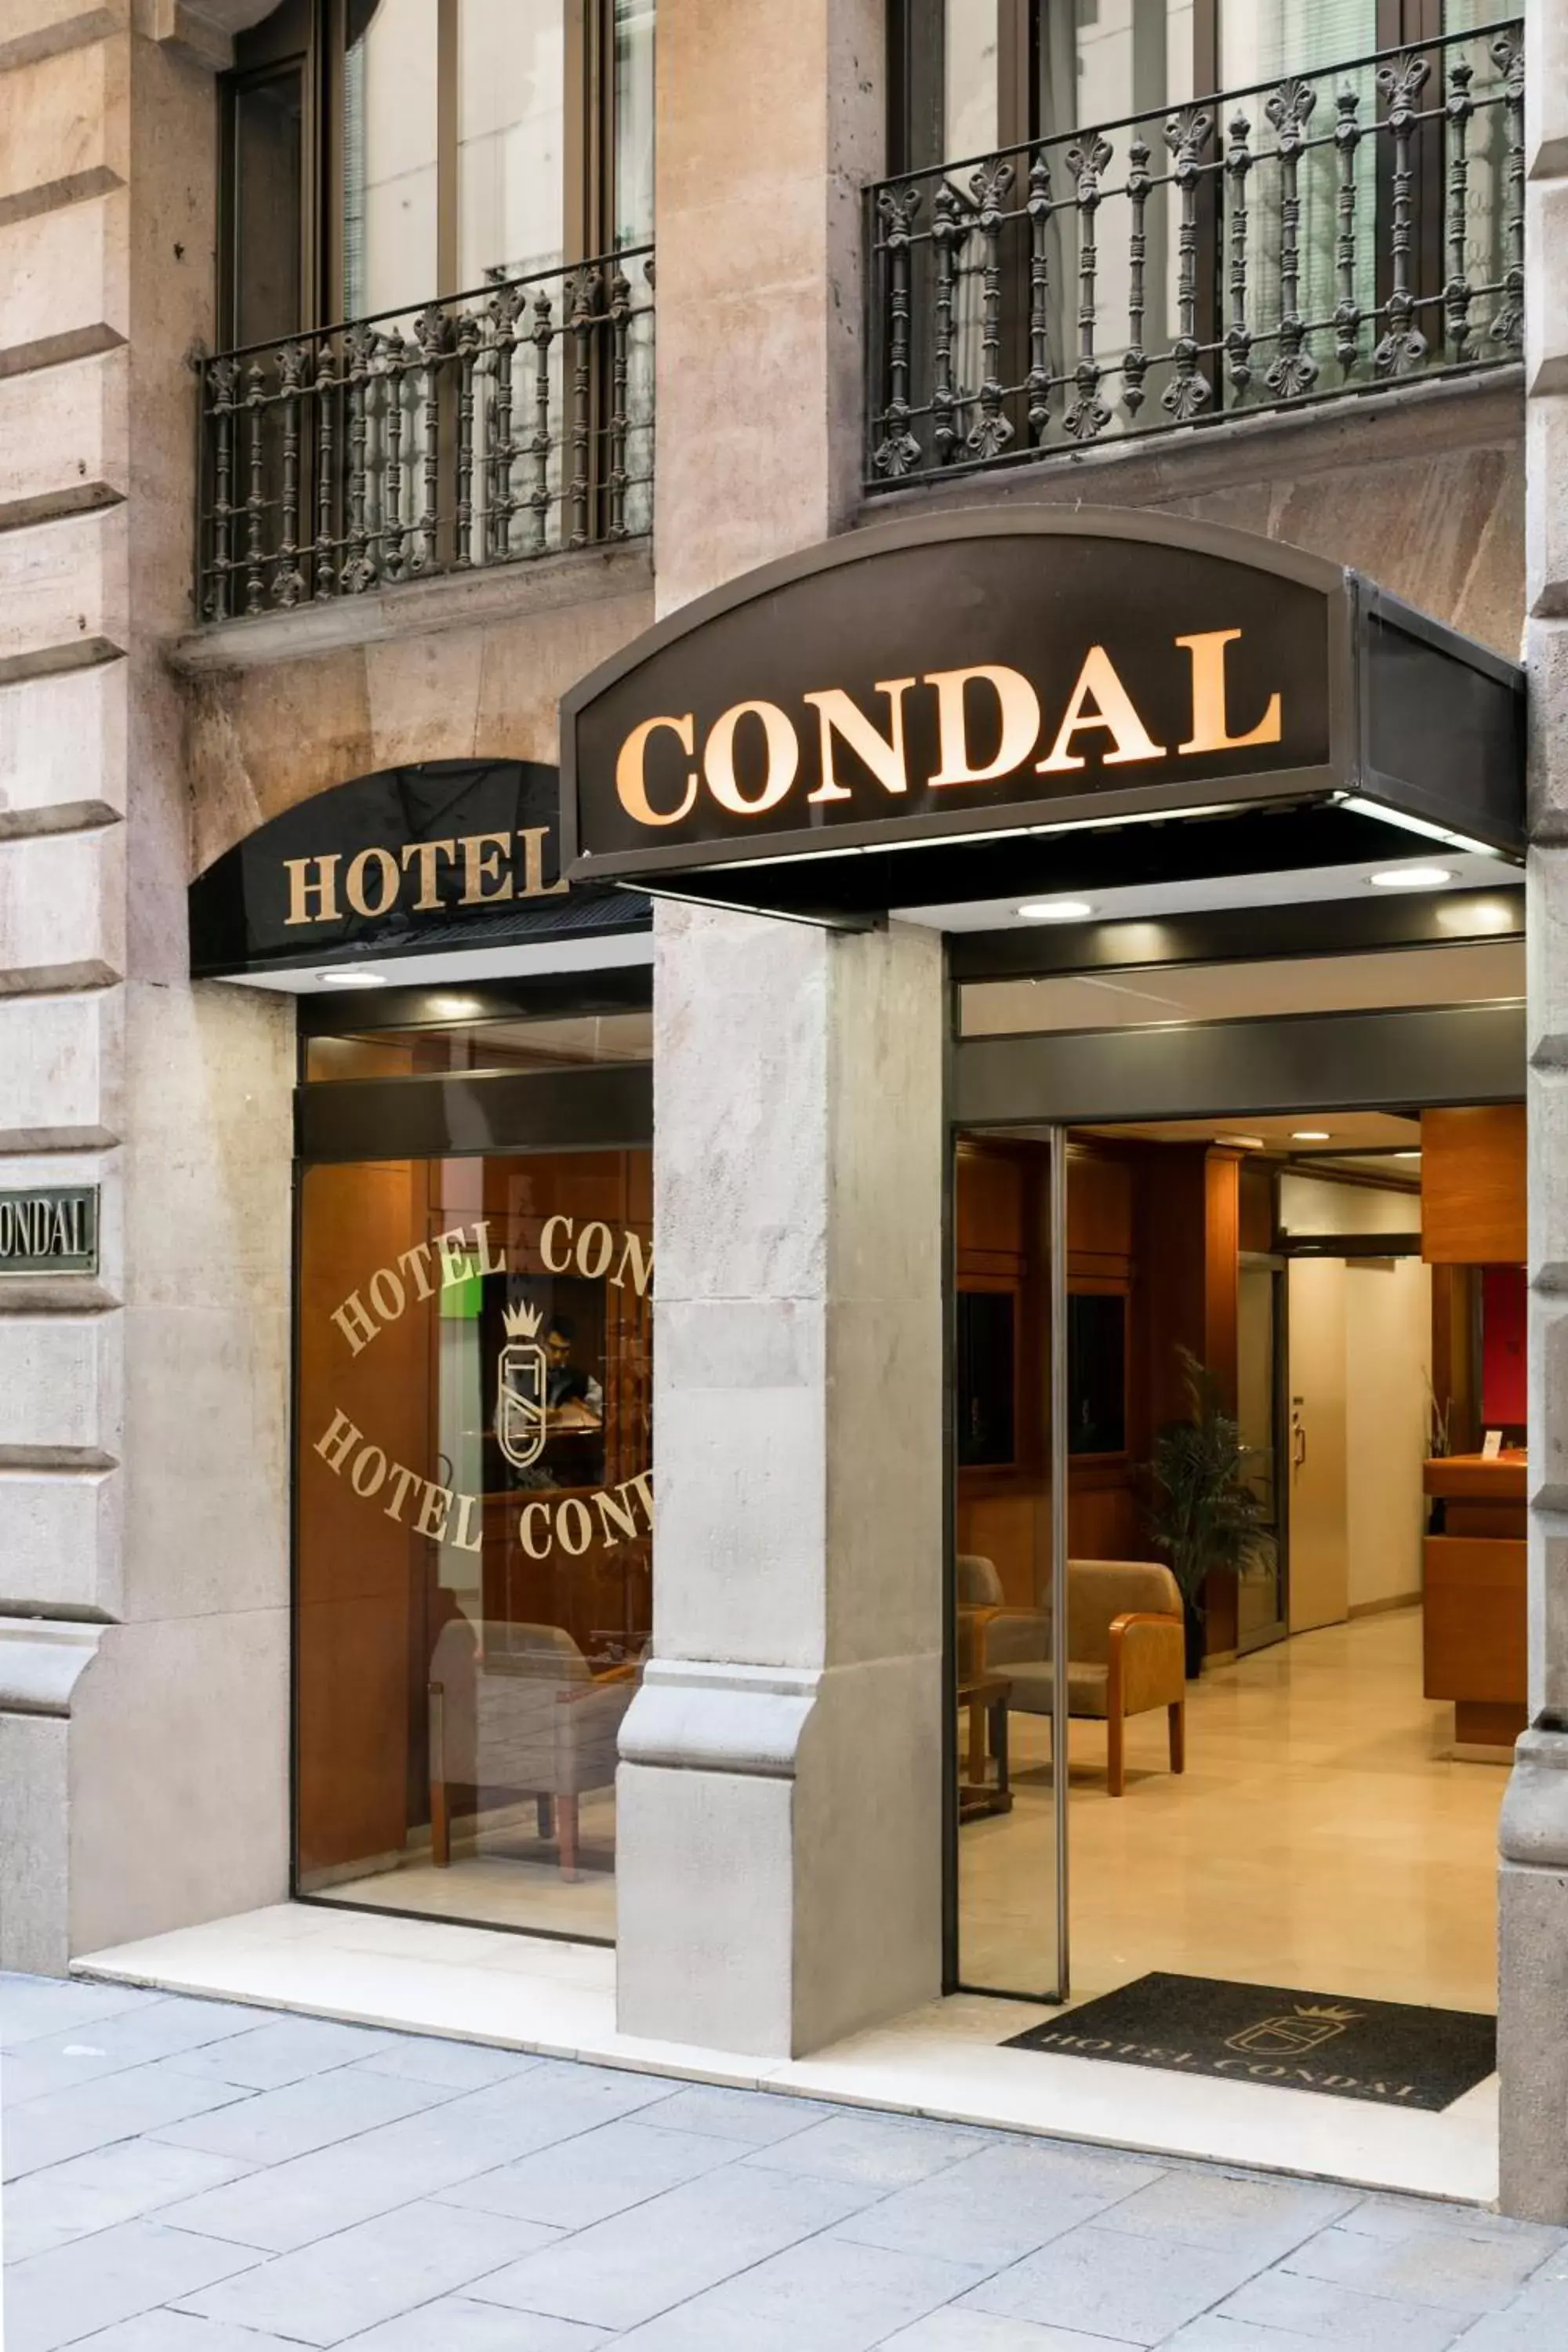 Facade/entrance in Hotel Condal